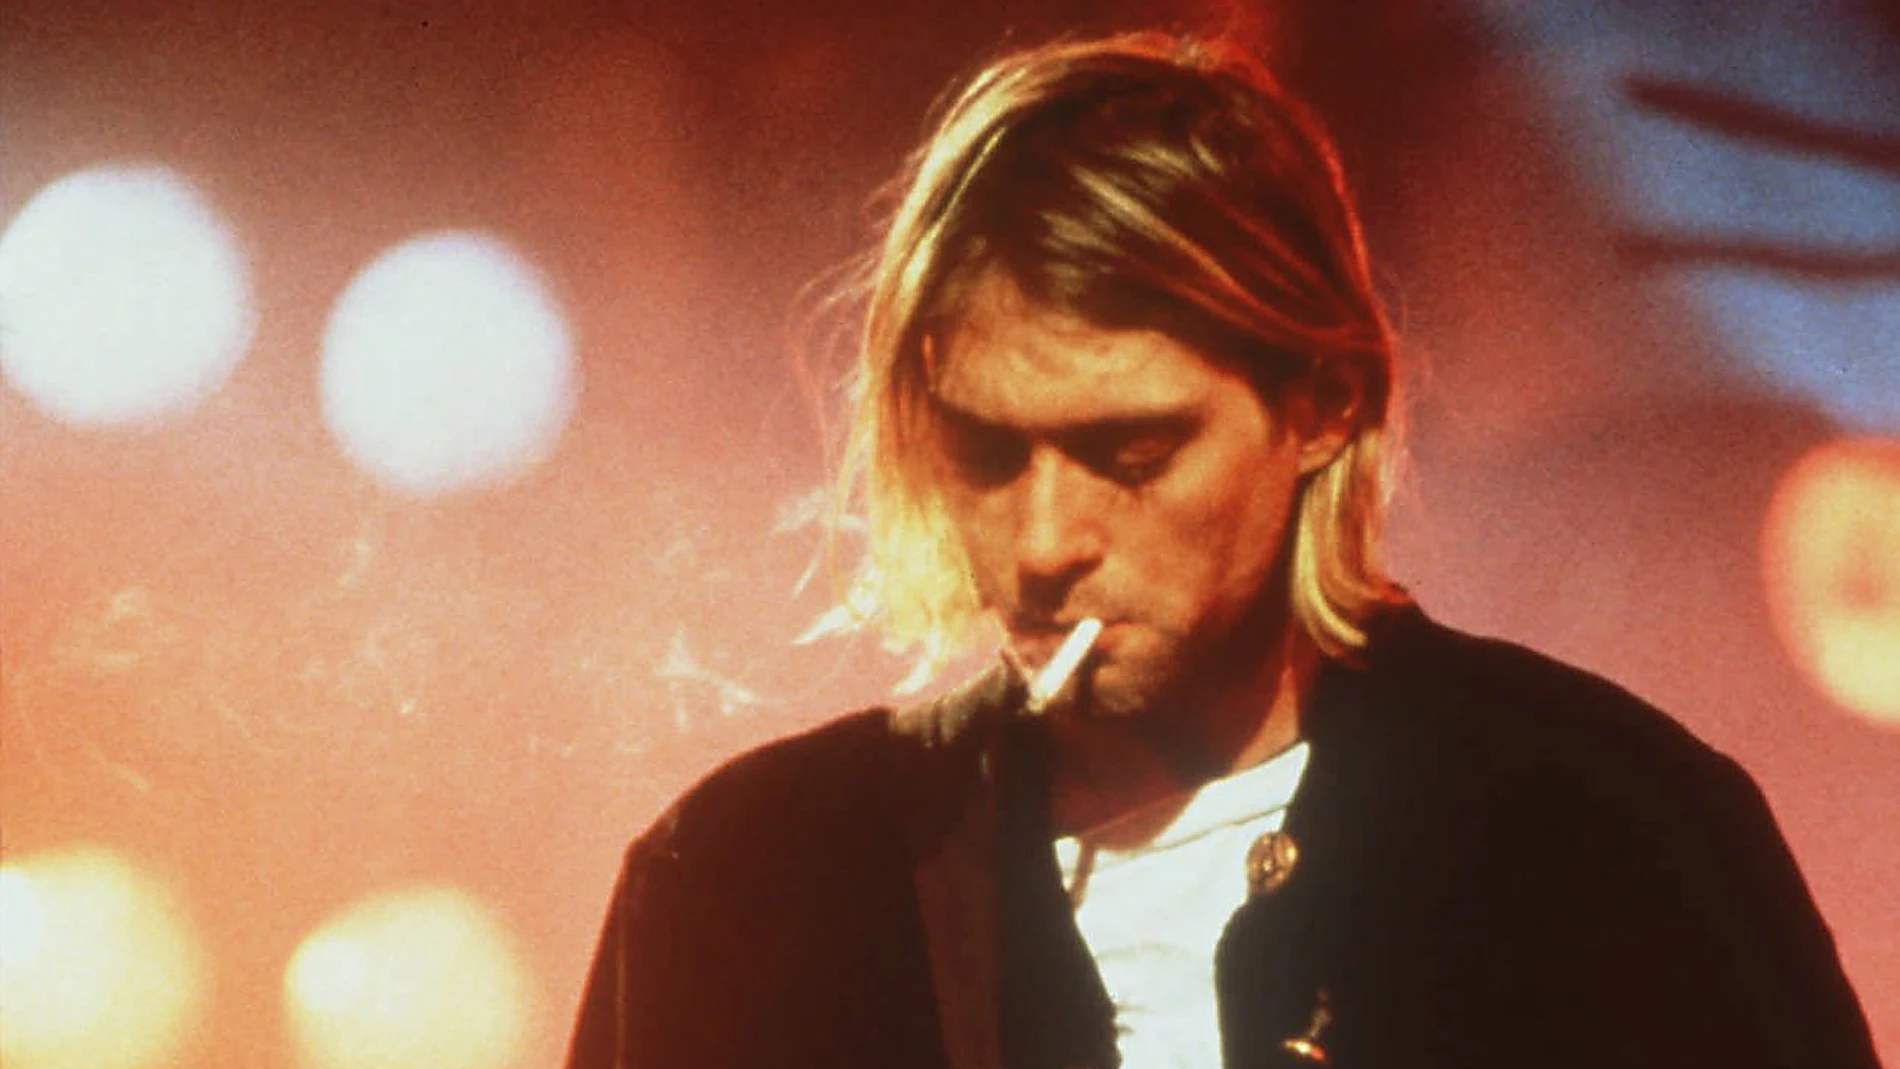 El FBI desclasifica los archivos sobre la muerte de Kurt Cobain y las cartas con teorías conspirativas